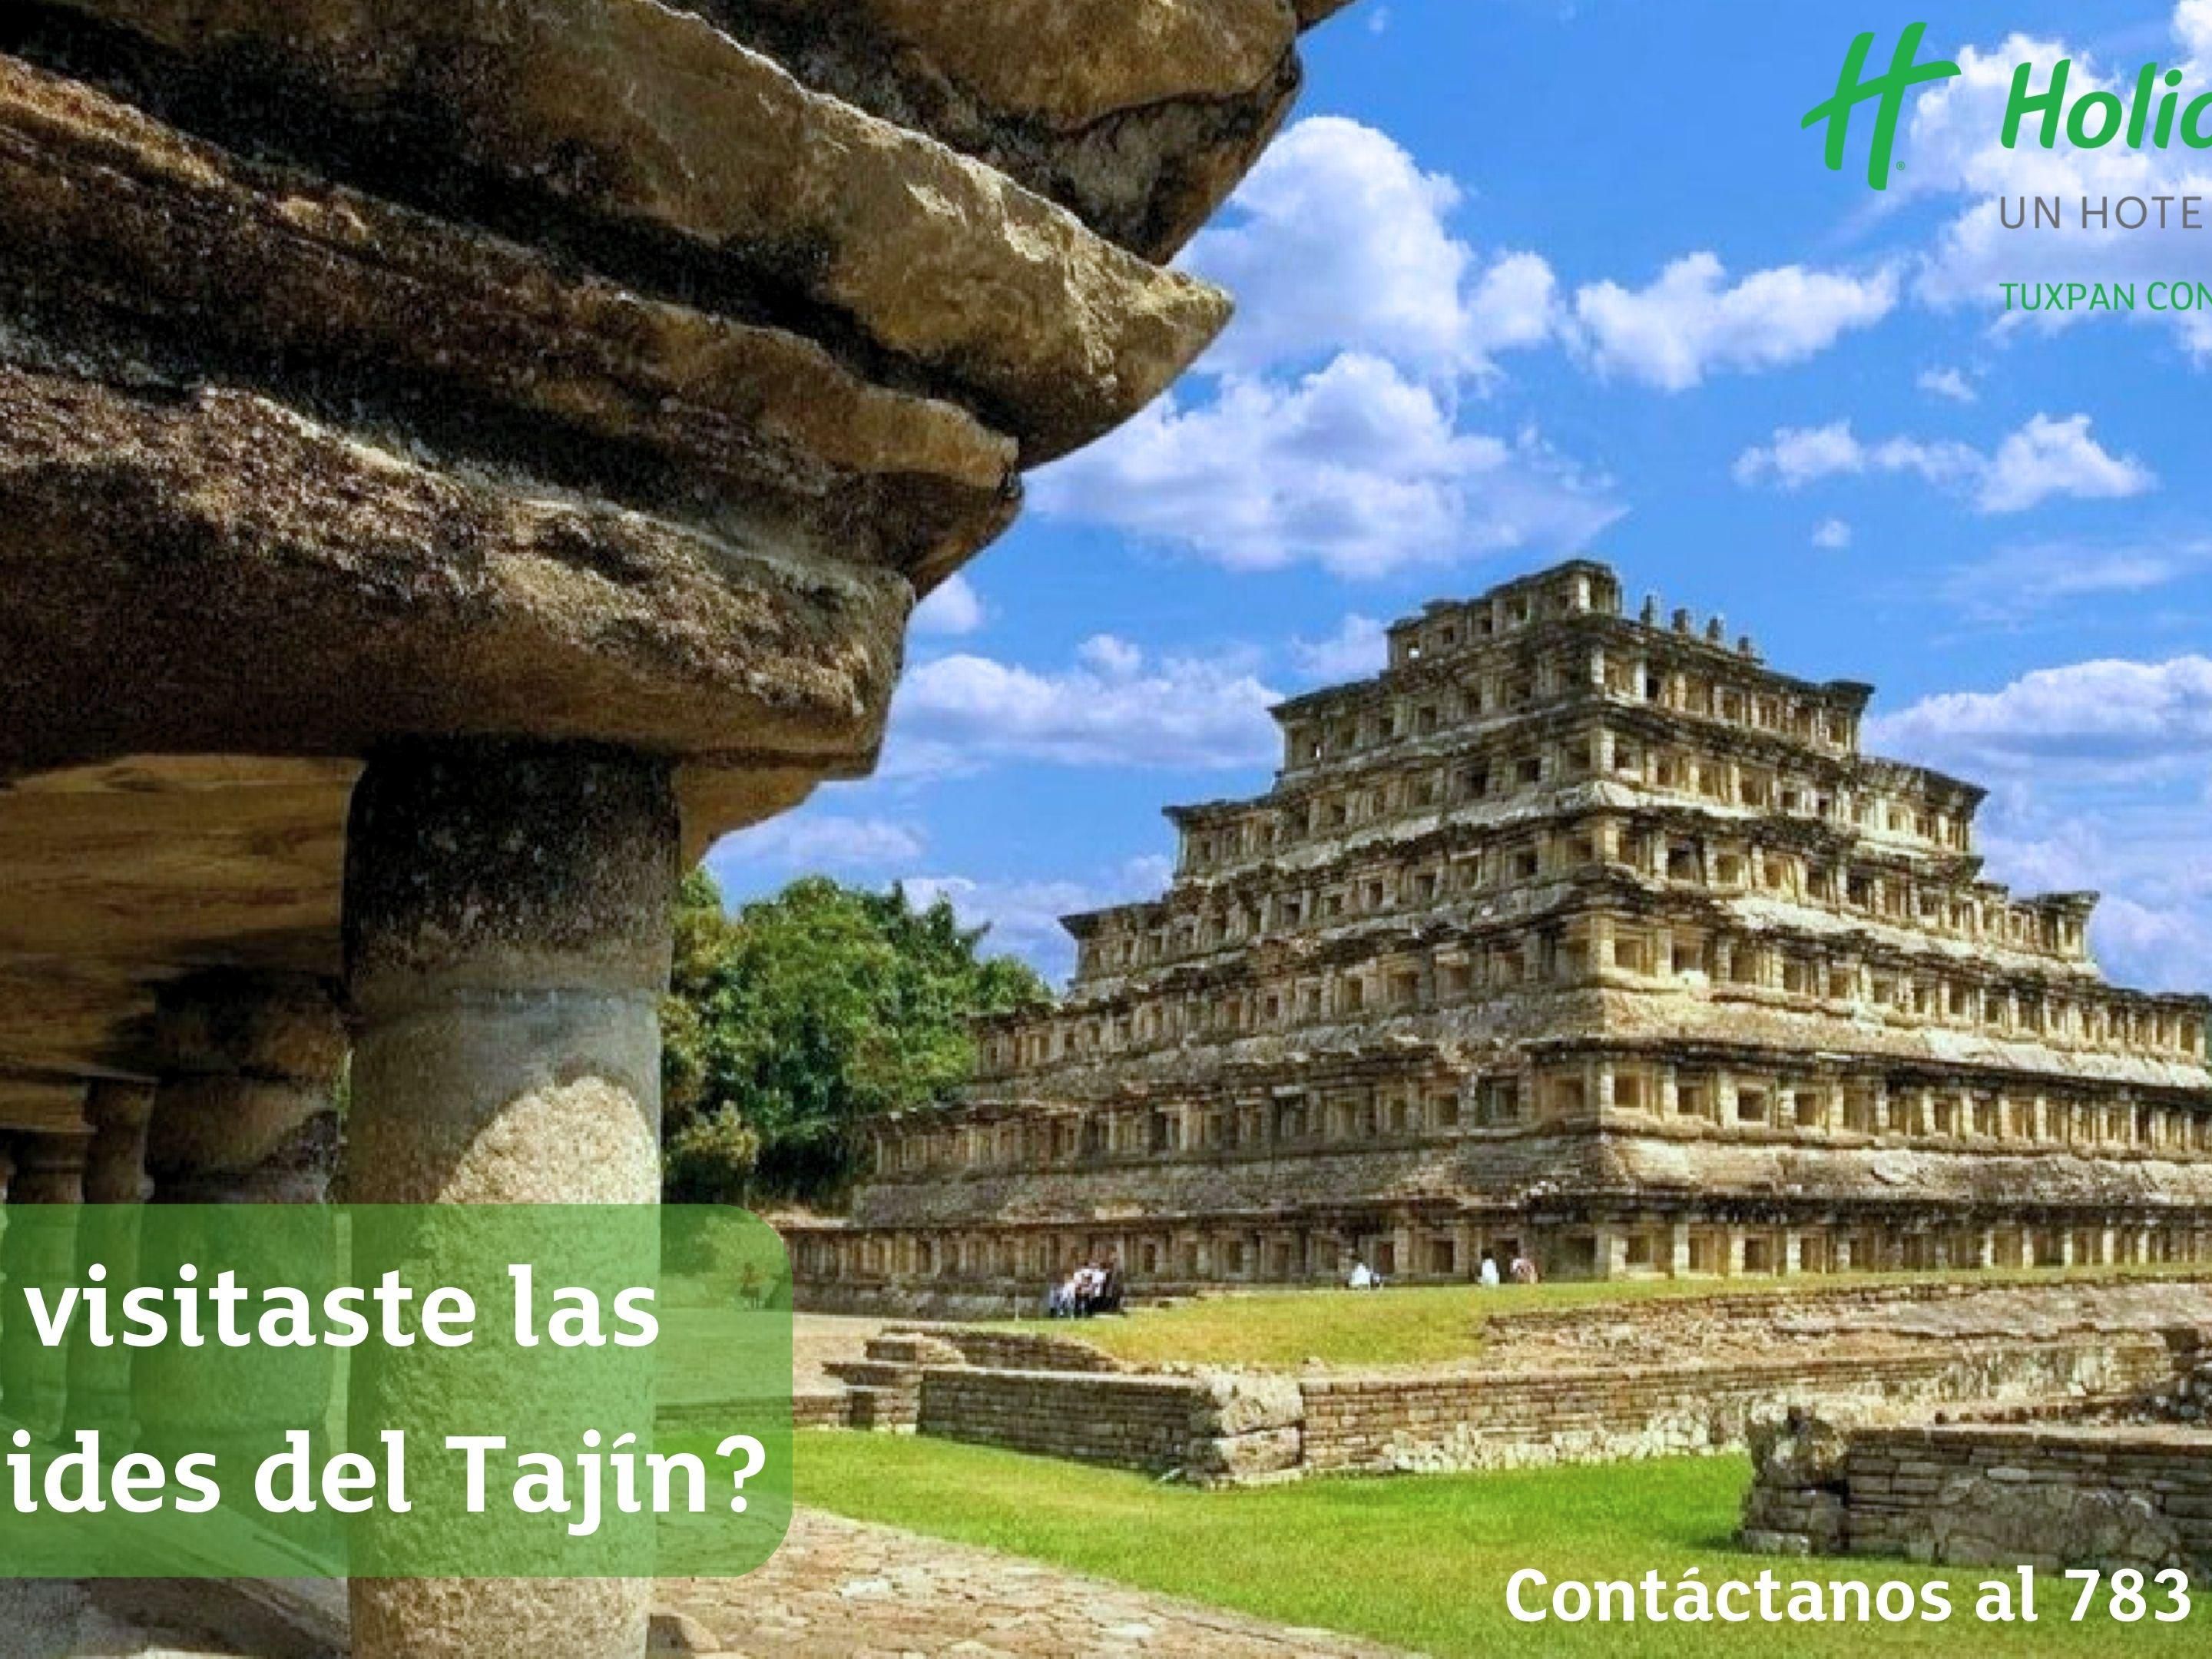 Do you already know Tajín?